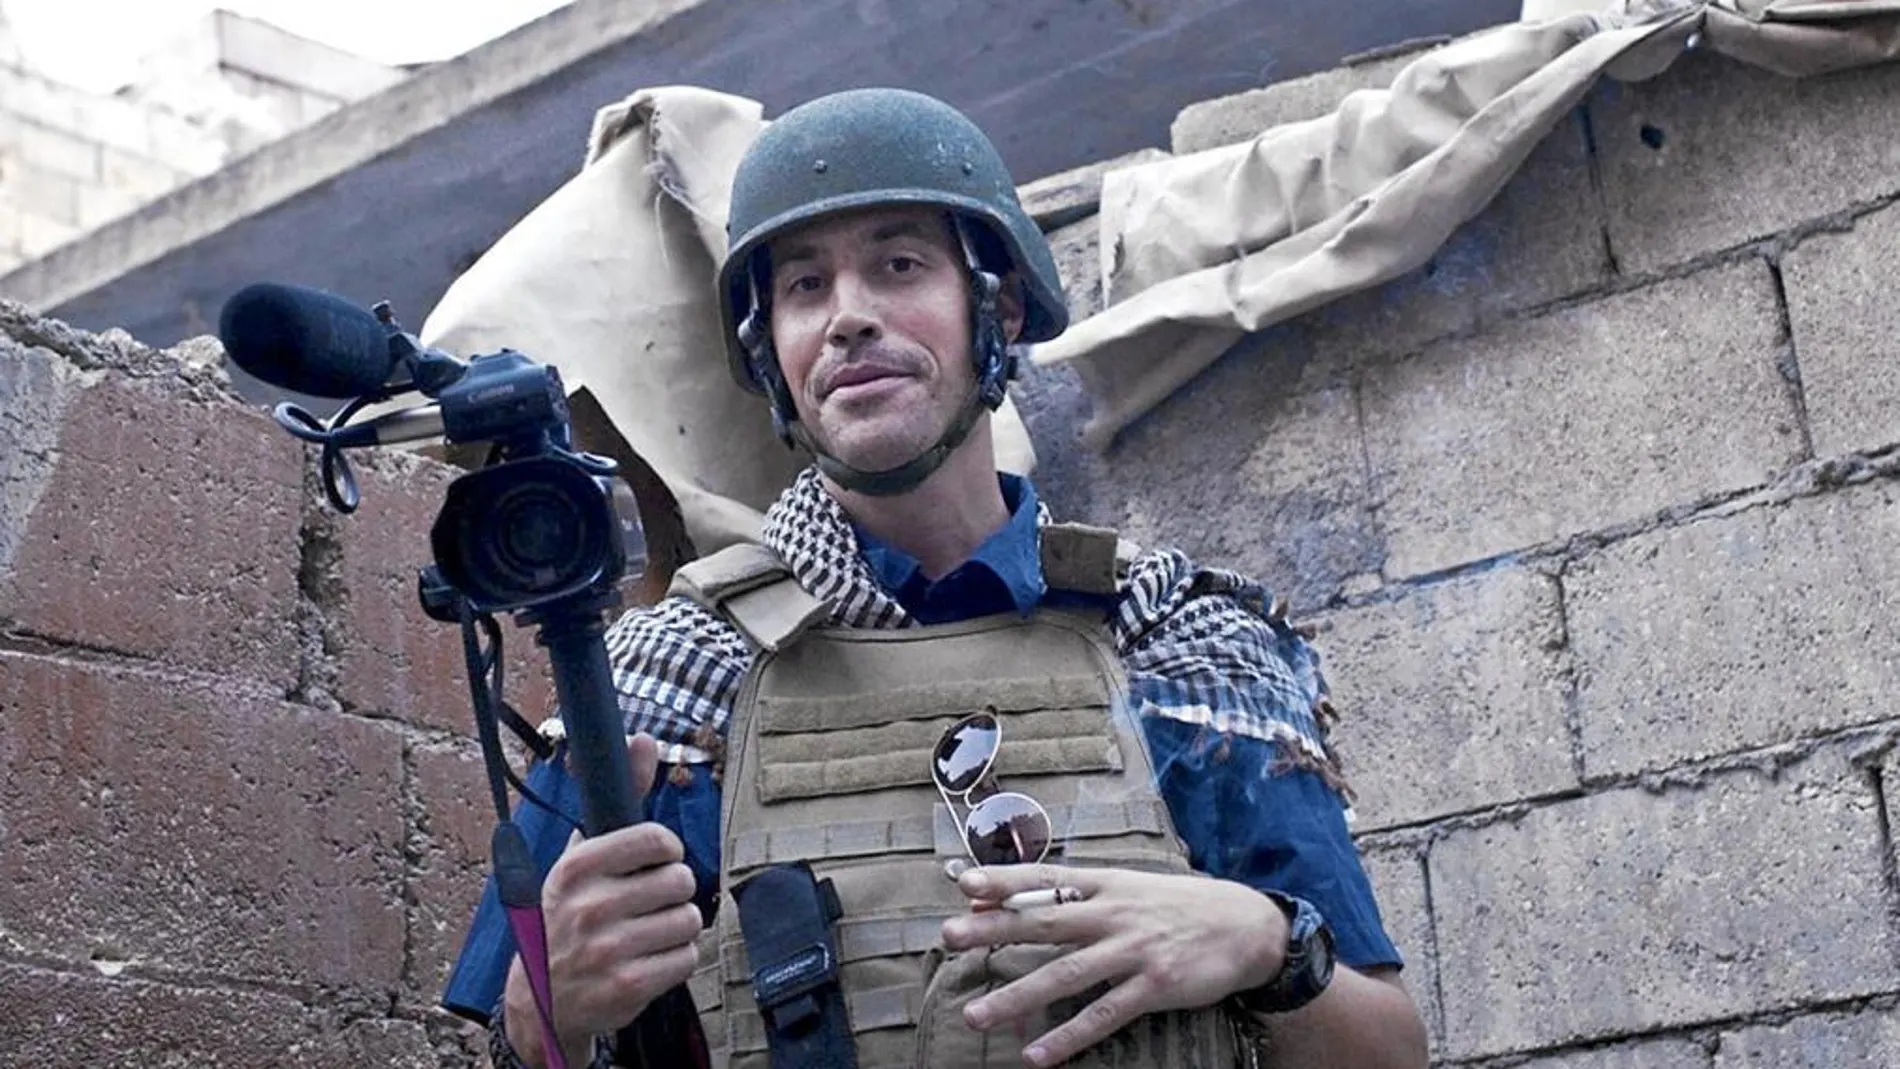 El periodista James Foley en una imagen de 2012 en Alepo, donde cubrió la guerra de Siria